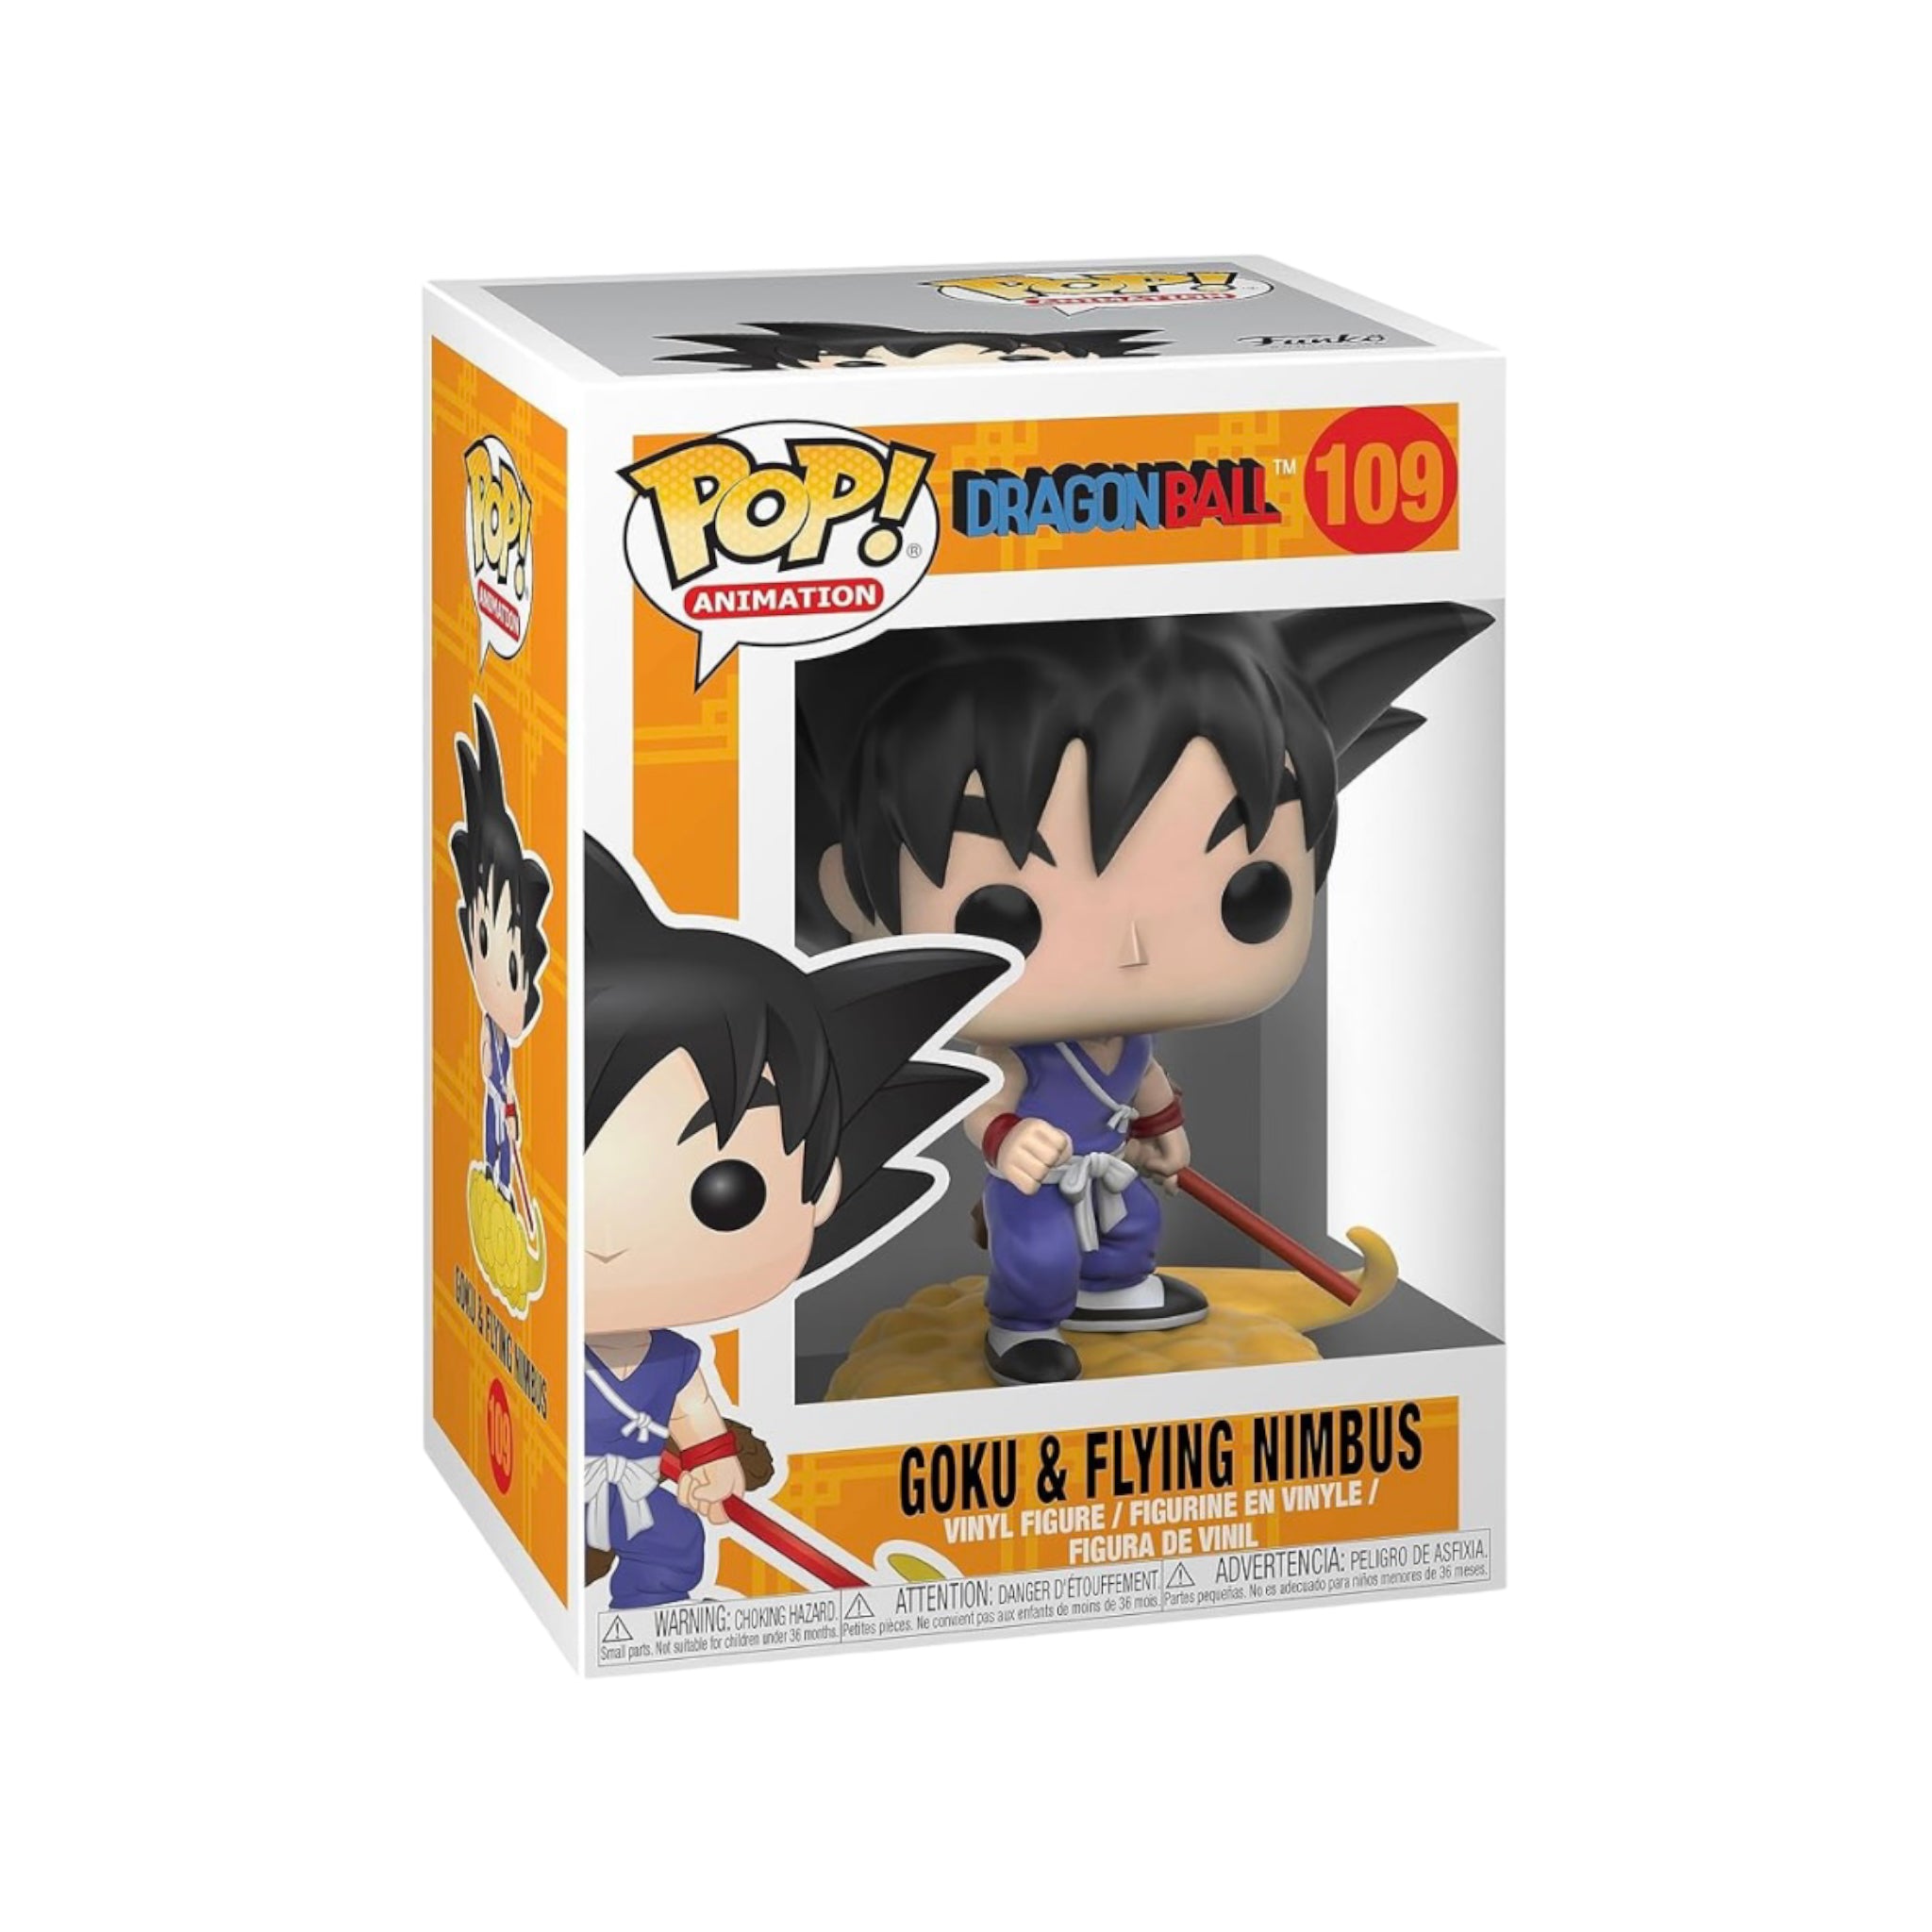 Goku & Flying Nimbus #109 Funko Pop! - Dragon Ball